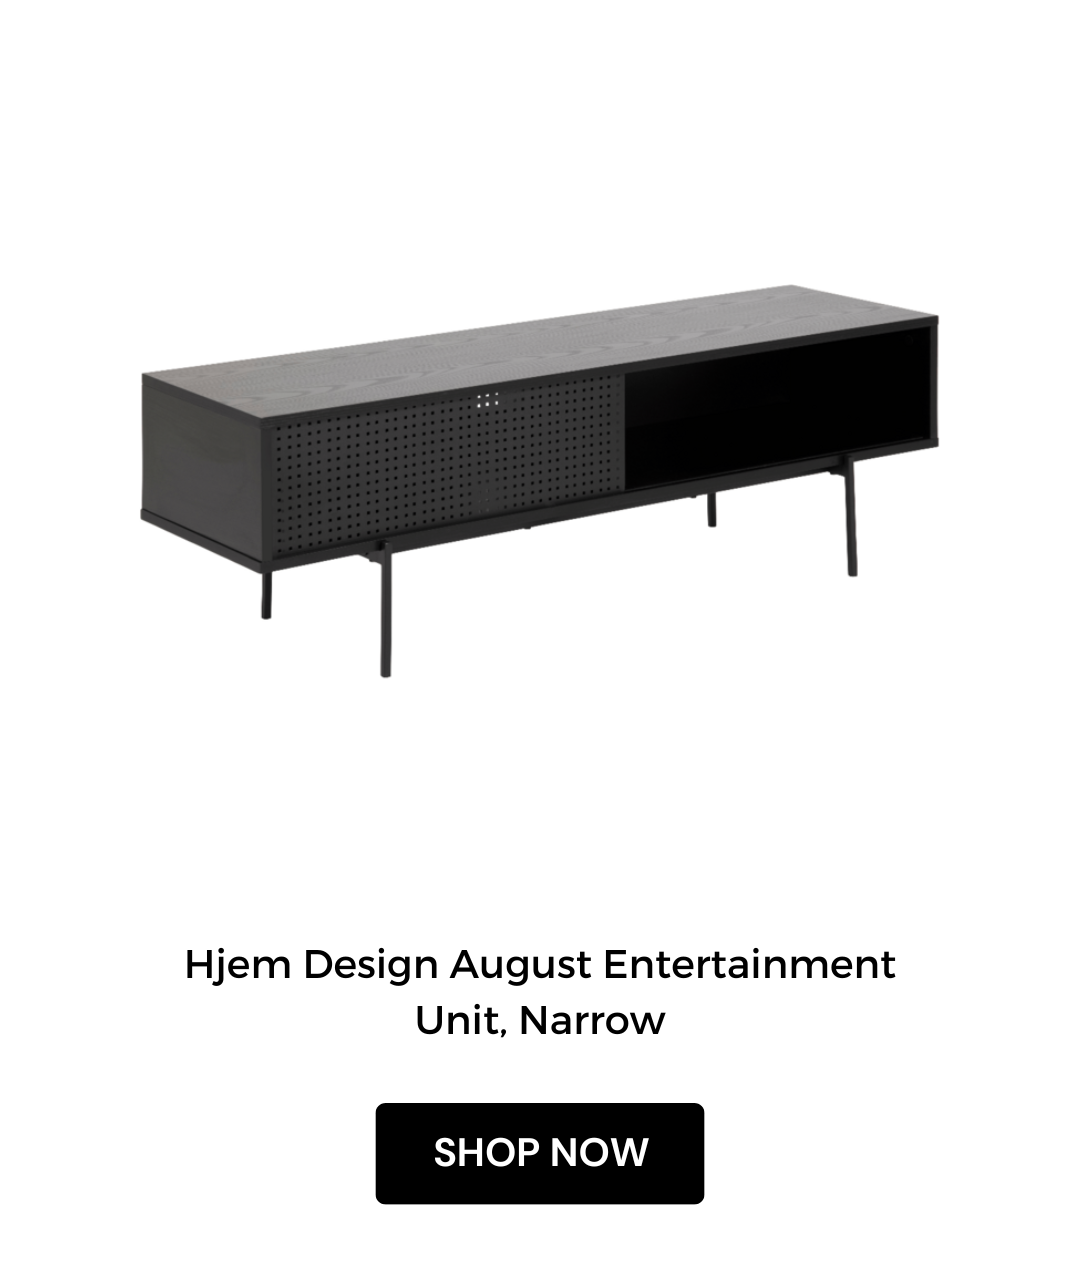 Hjem Design August Entertainment Unit, Narrow